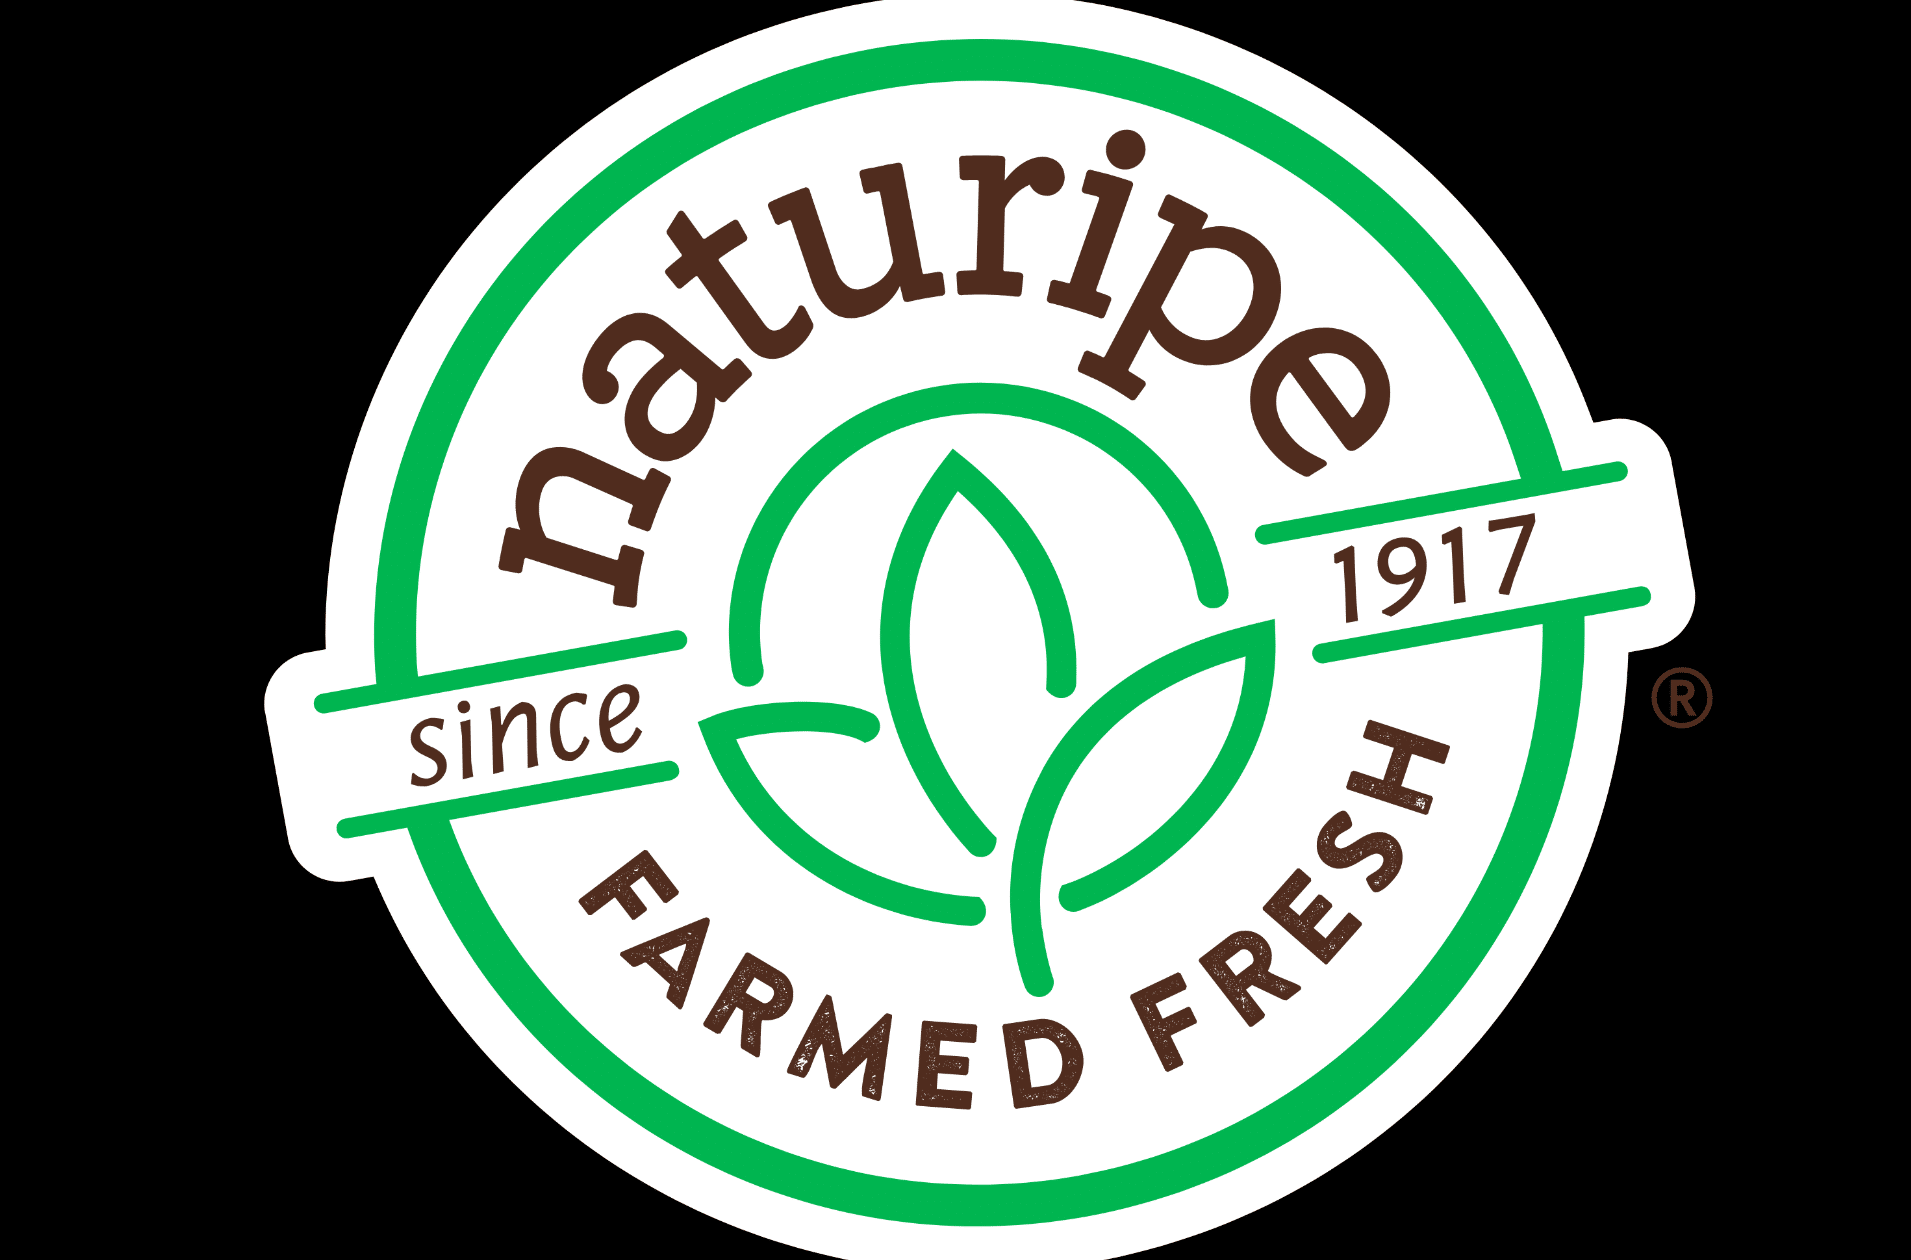 naturipe farms website hosting